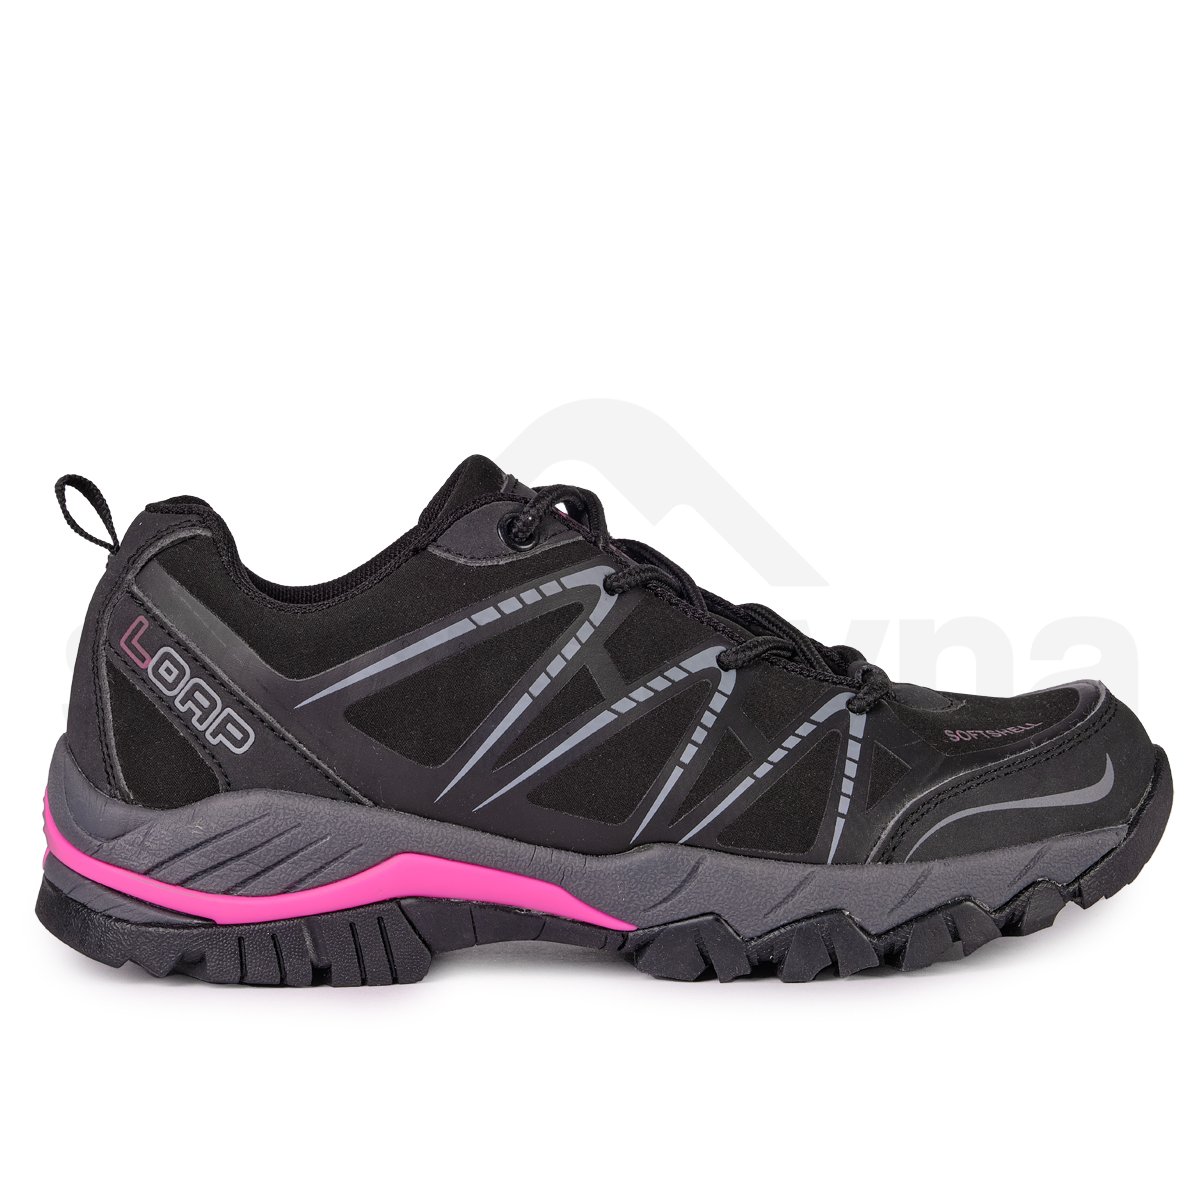 Dámské outdoorové boty Loap Erskine HSL18174d 130162 W - černá/růžová